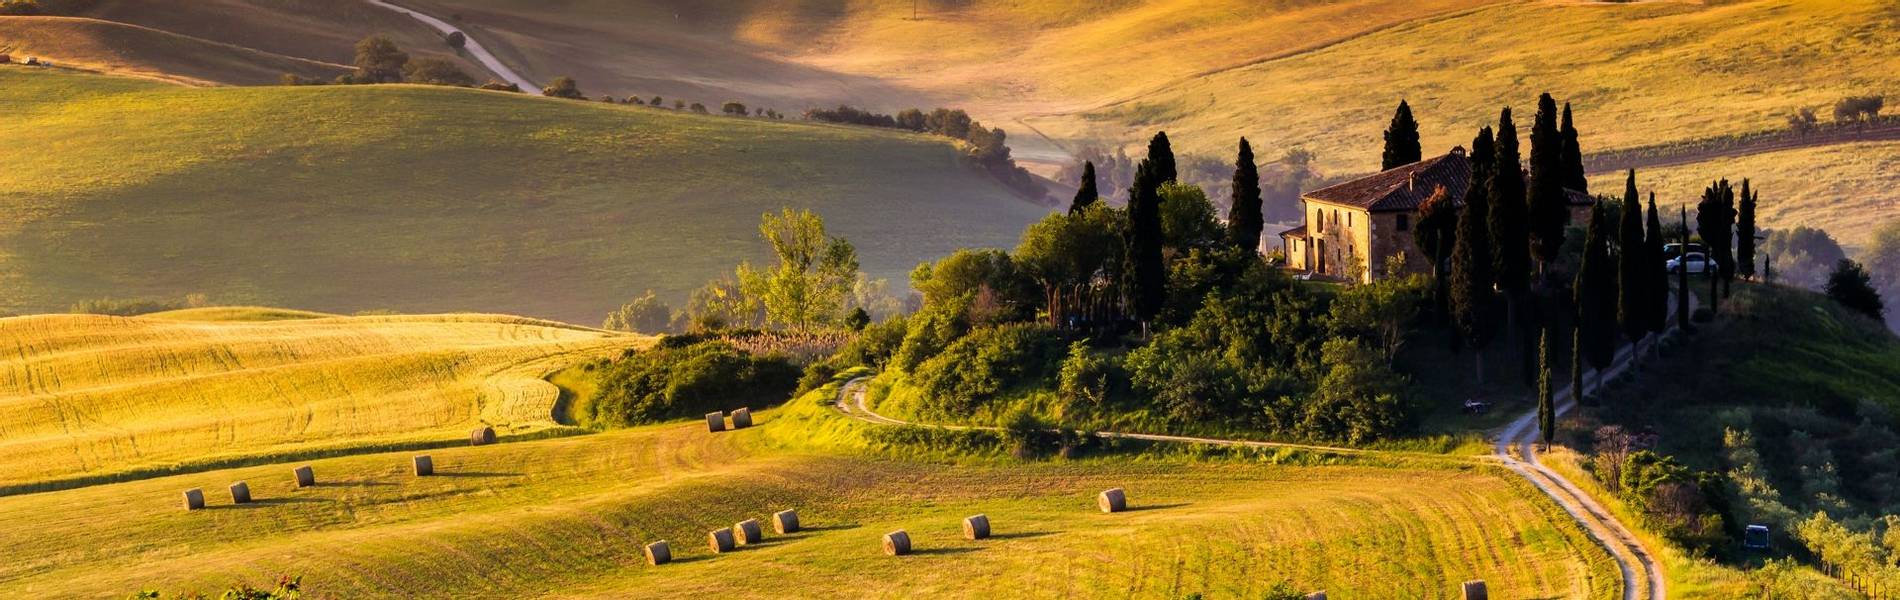 Tuscany landscape.jpg